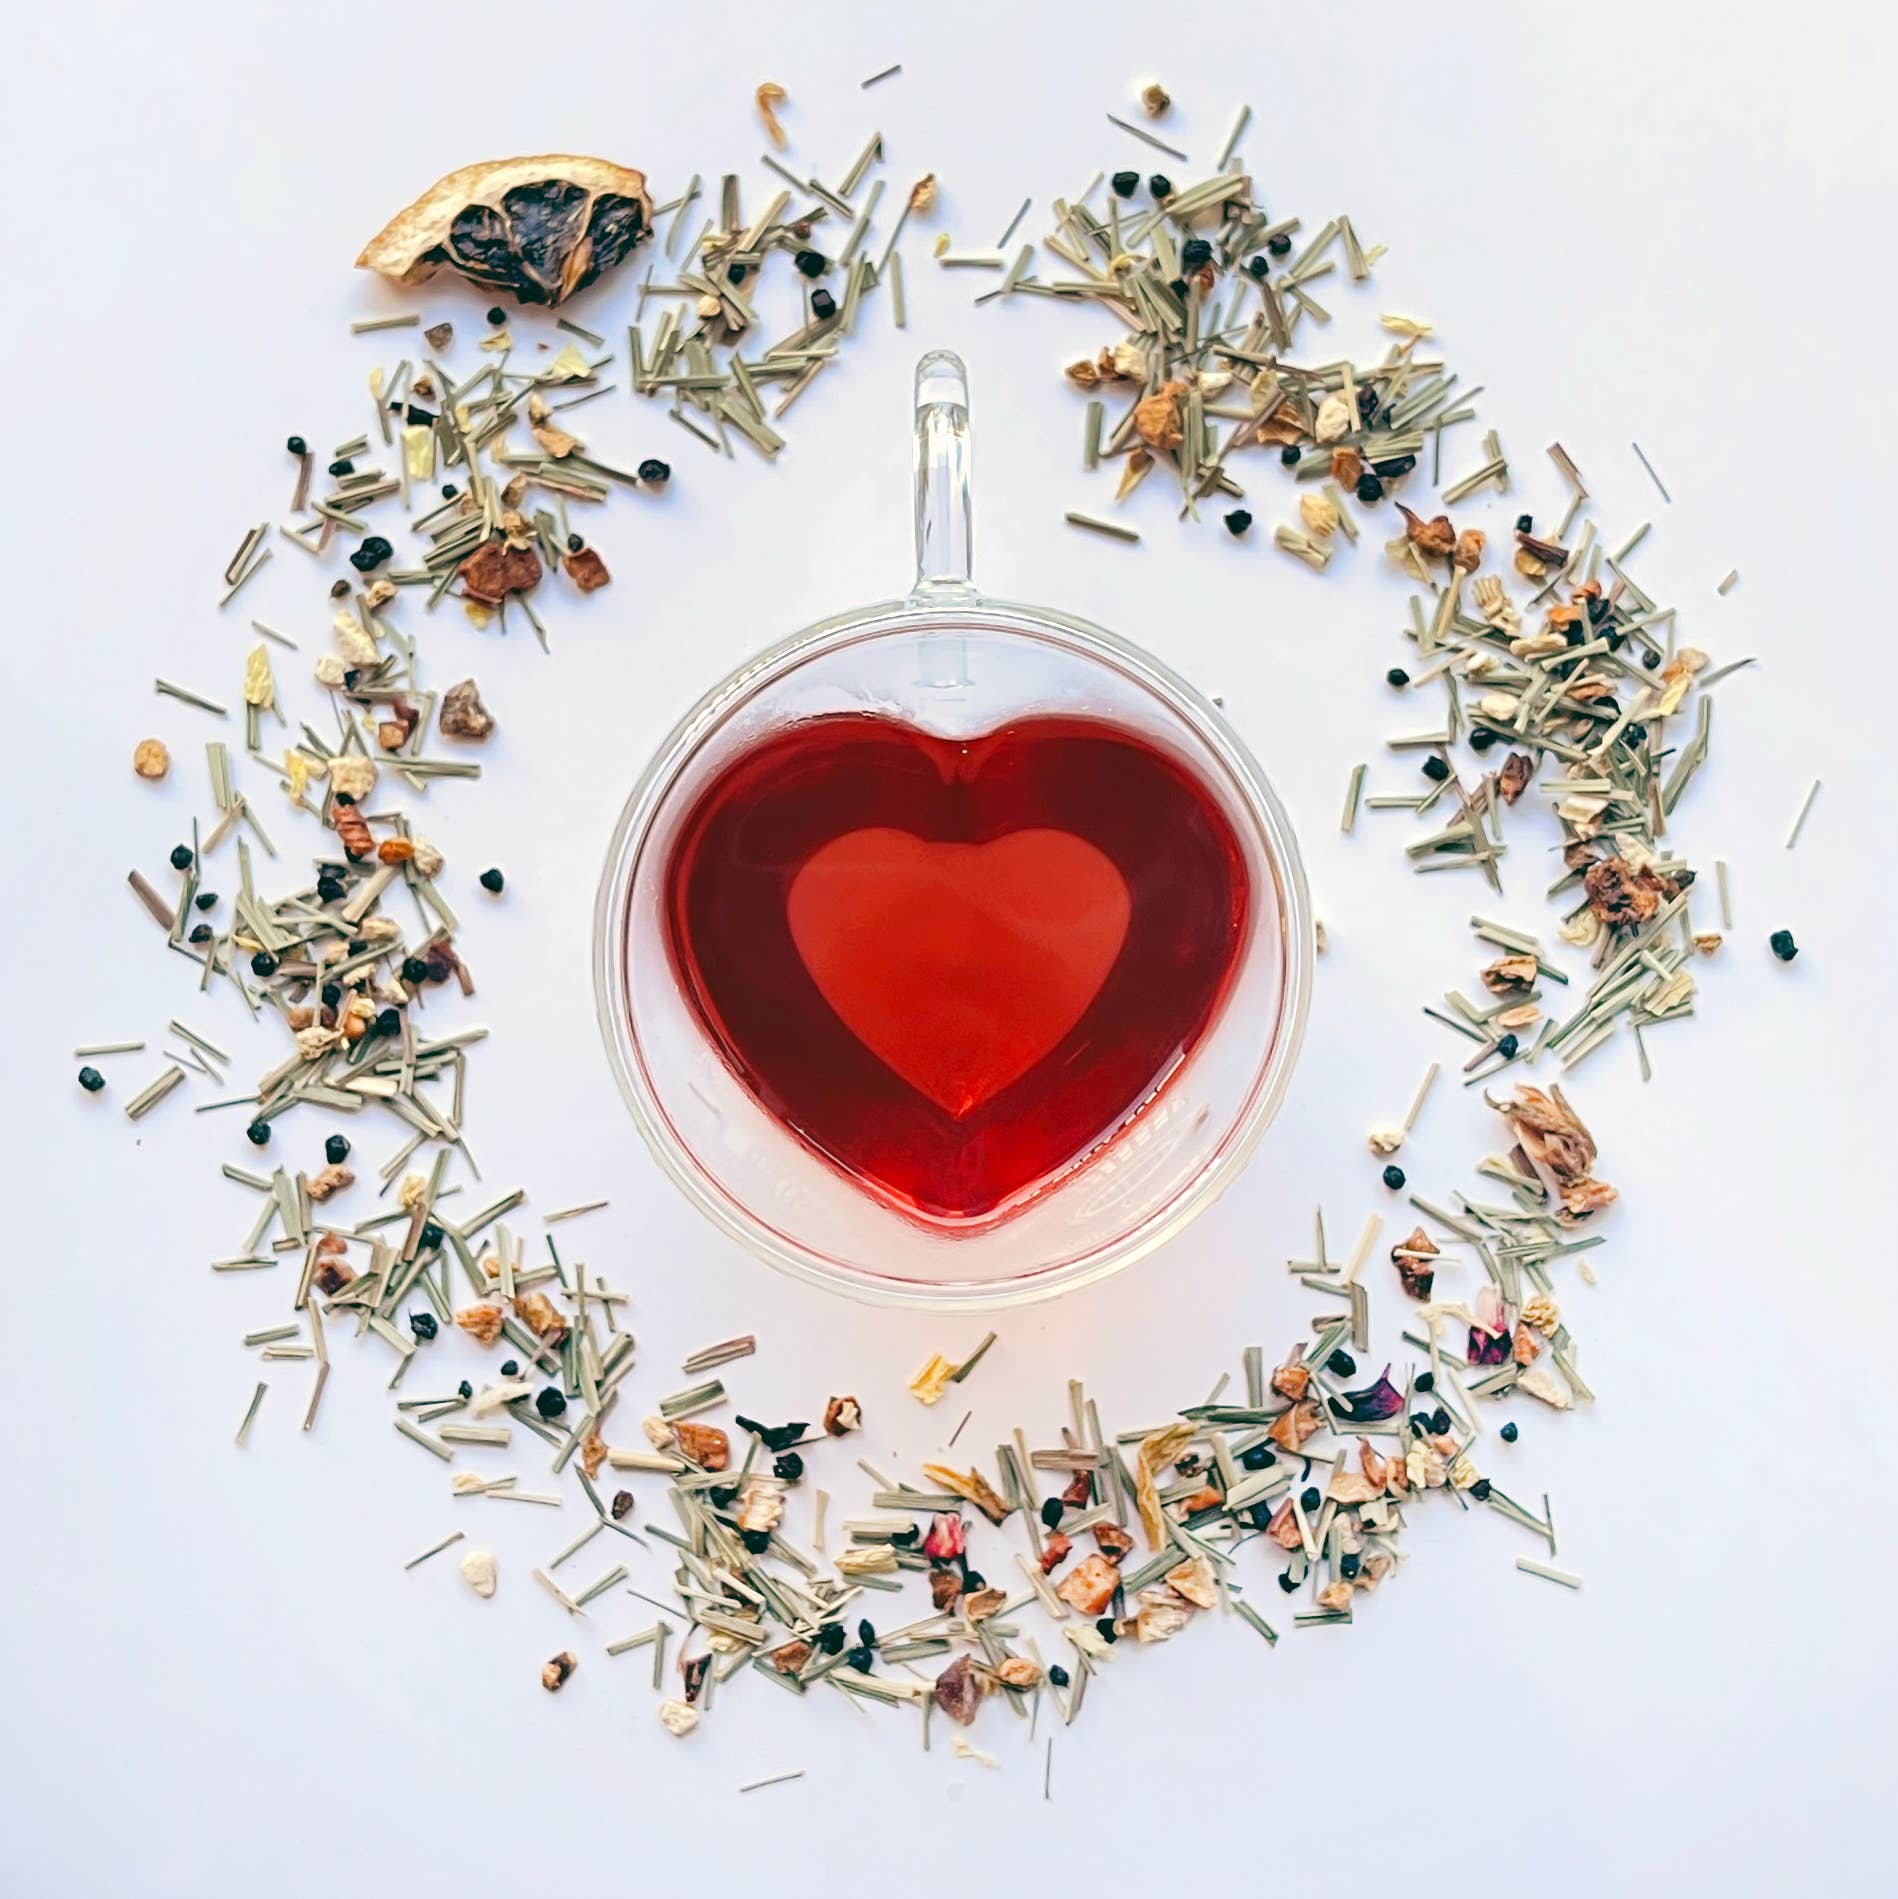 Glass heart mug with joyful tea by your botanical friend and loose tea